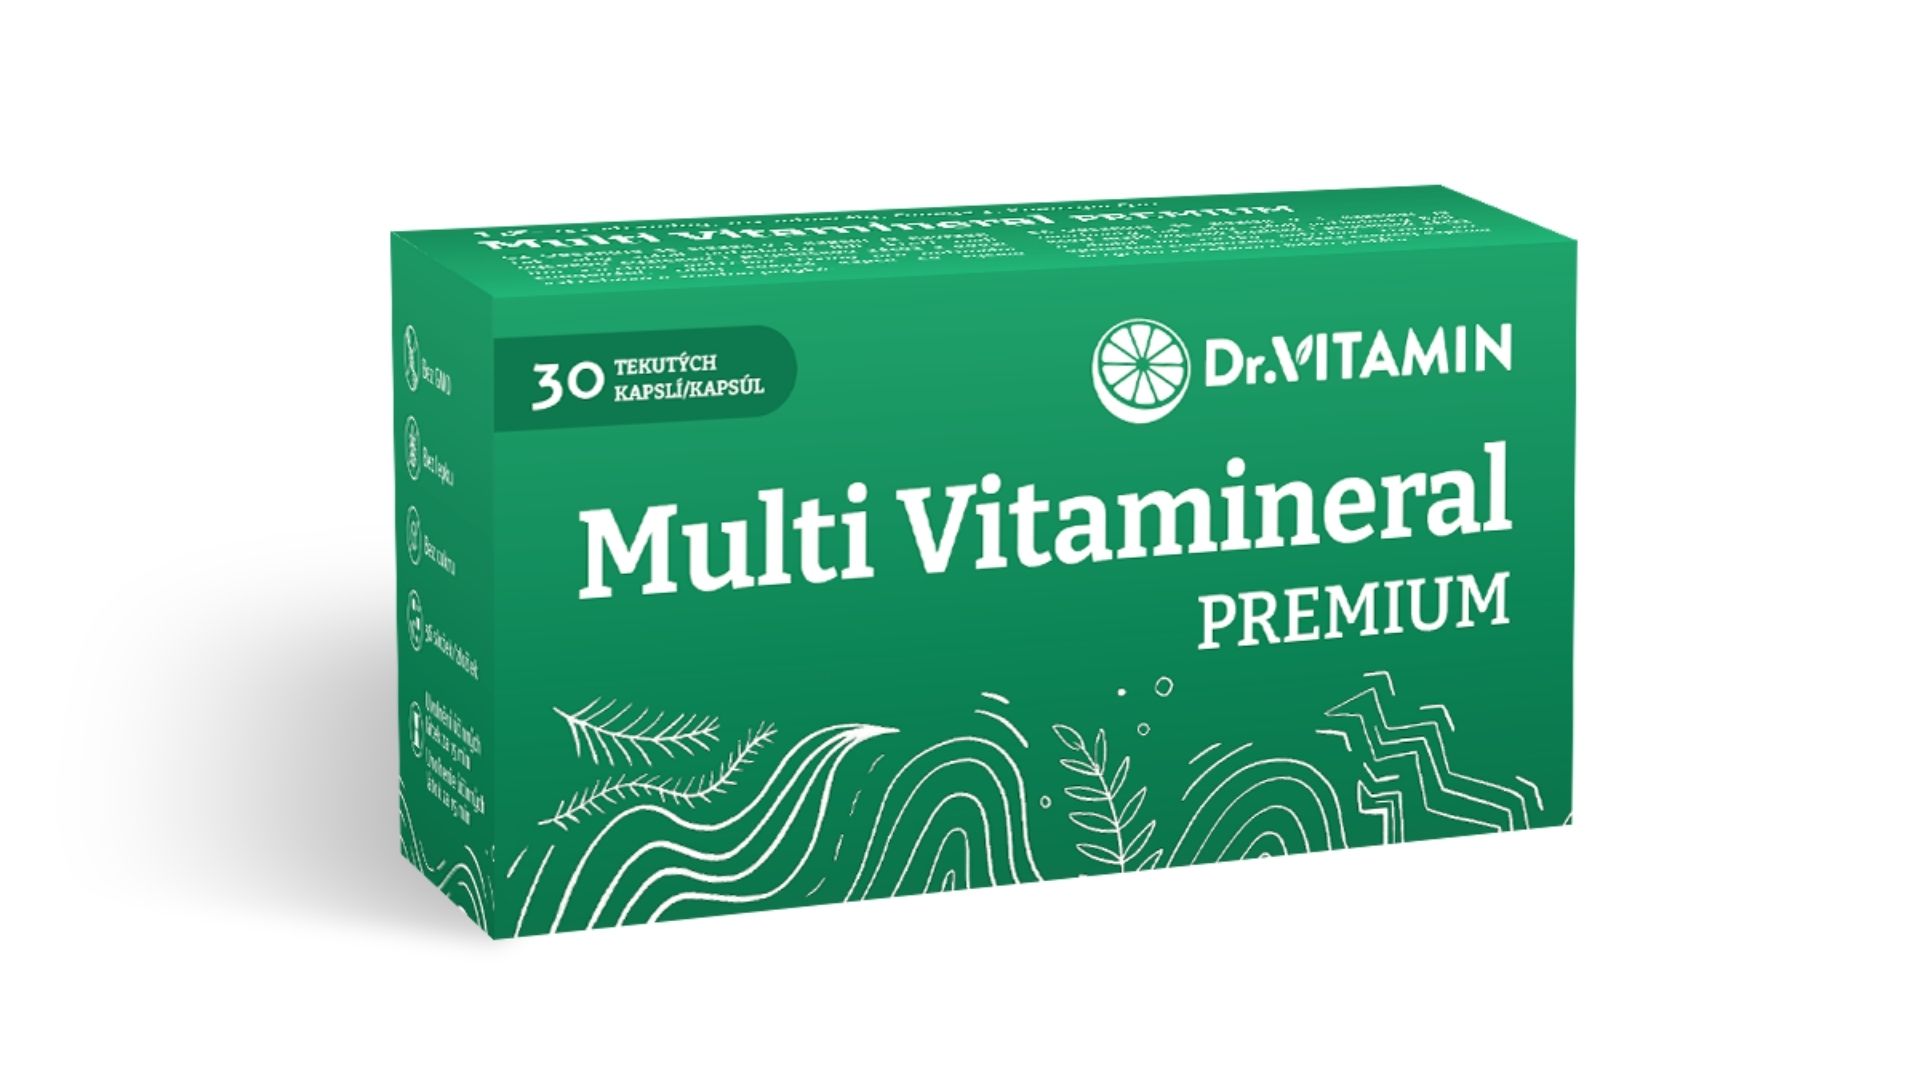 multi vitamineral premium